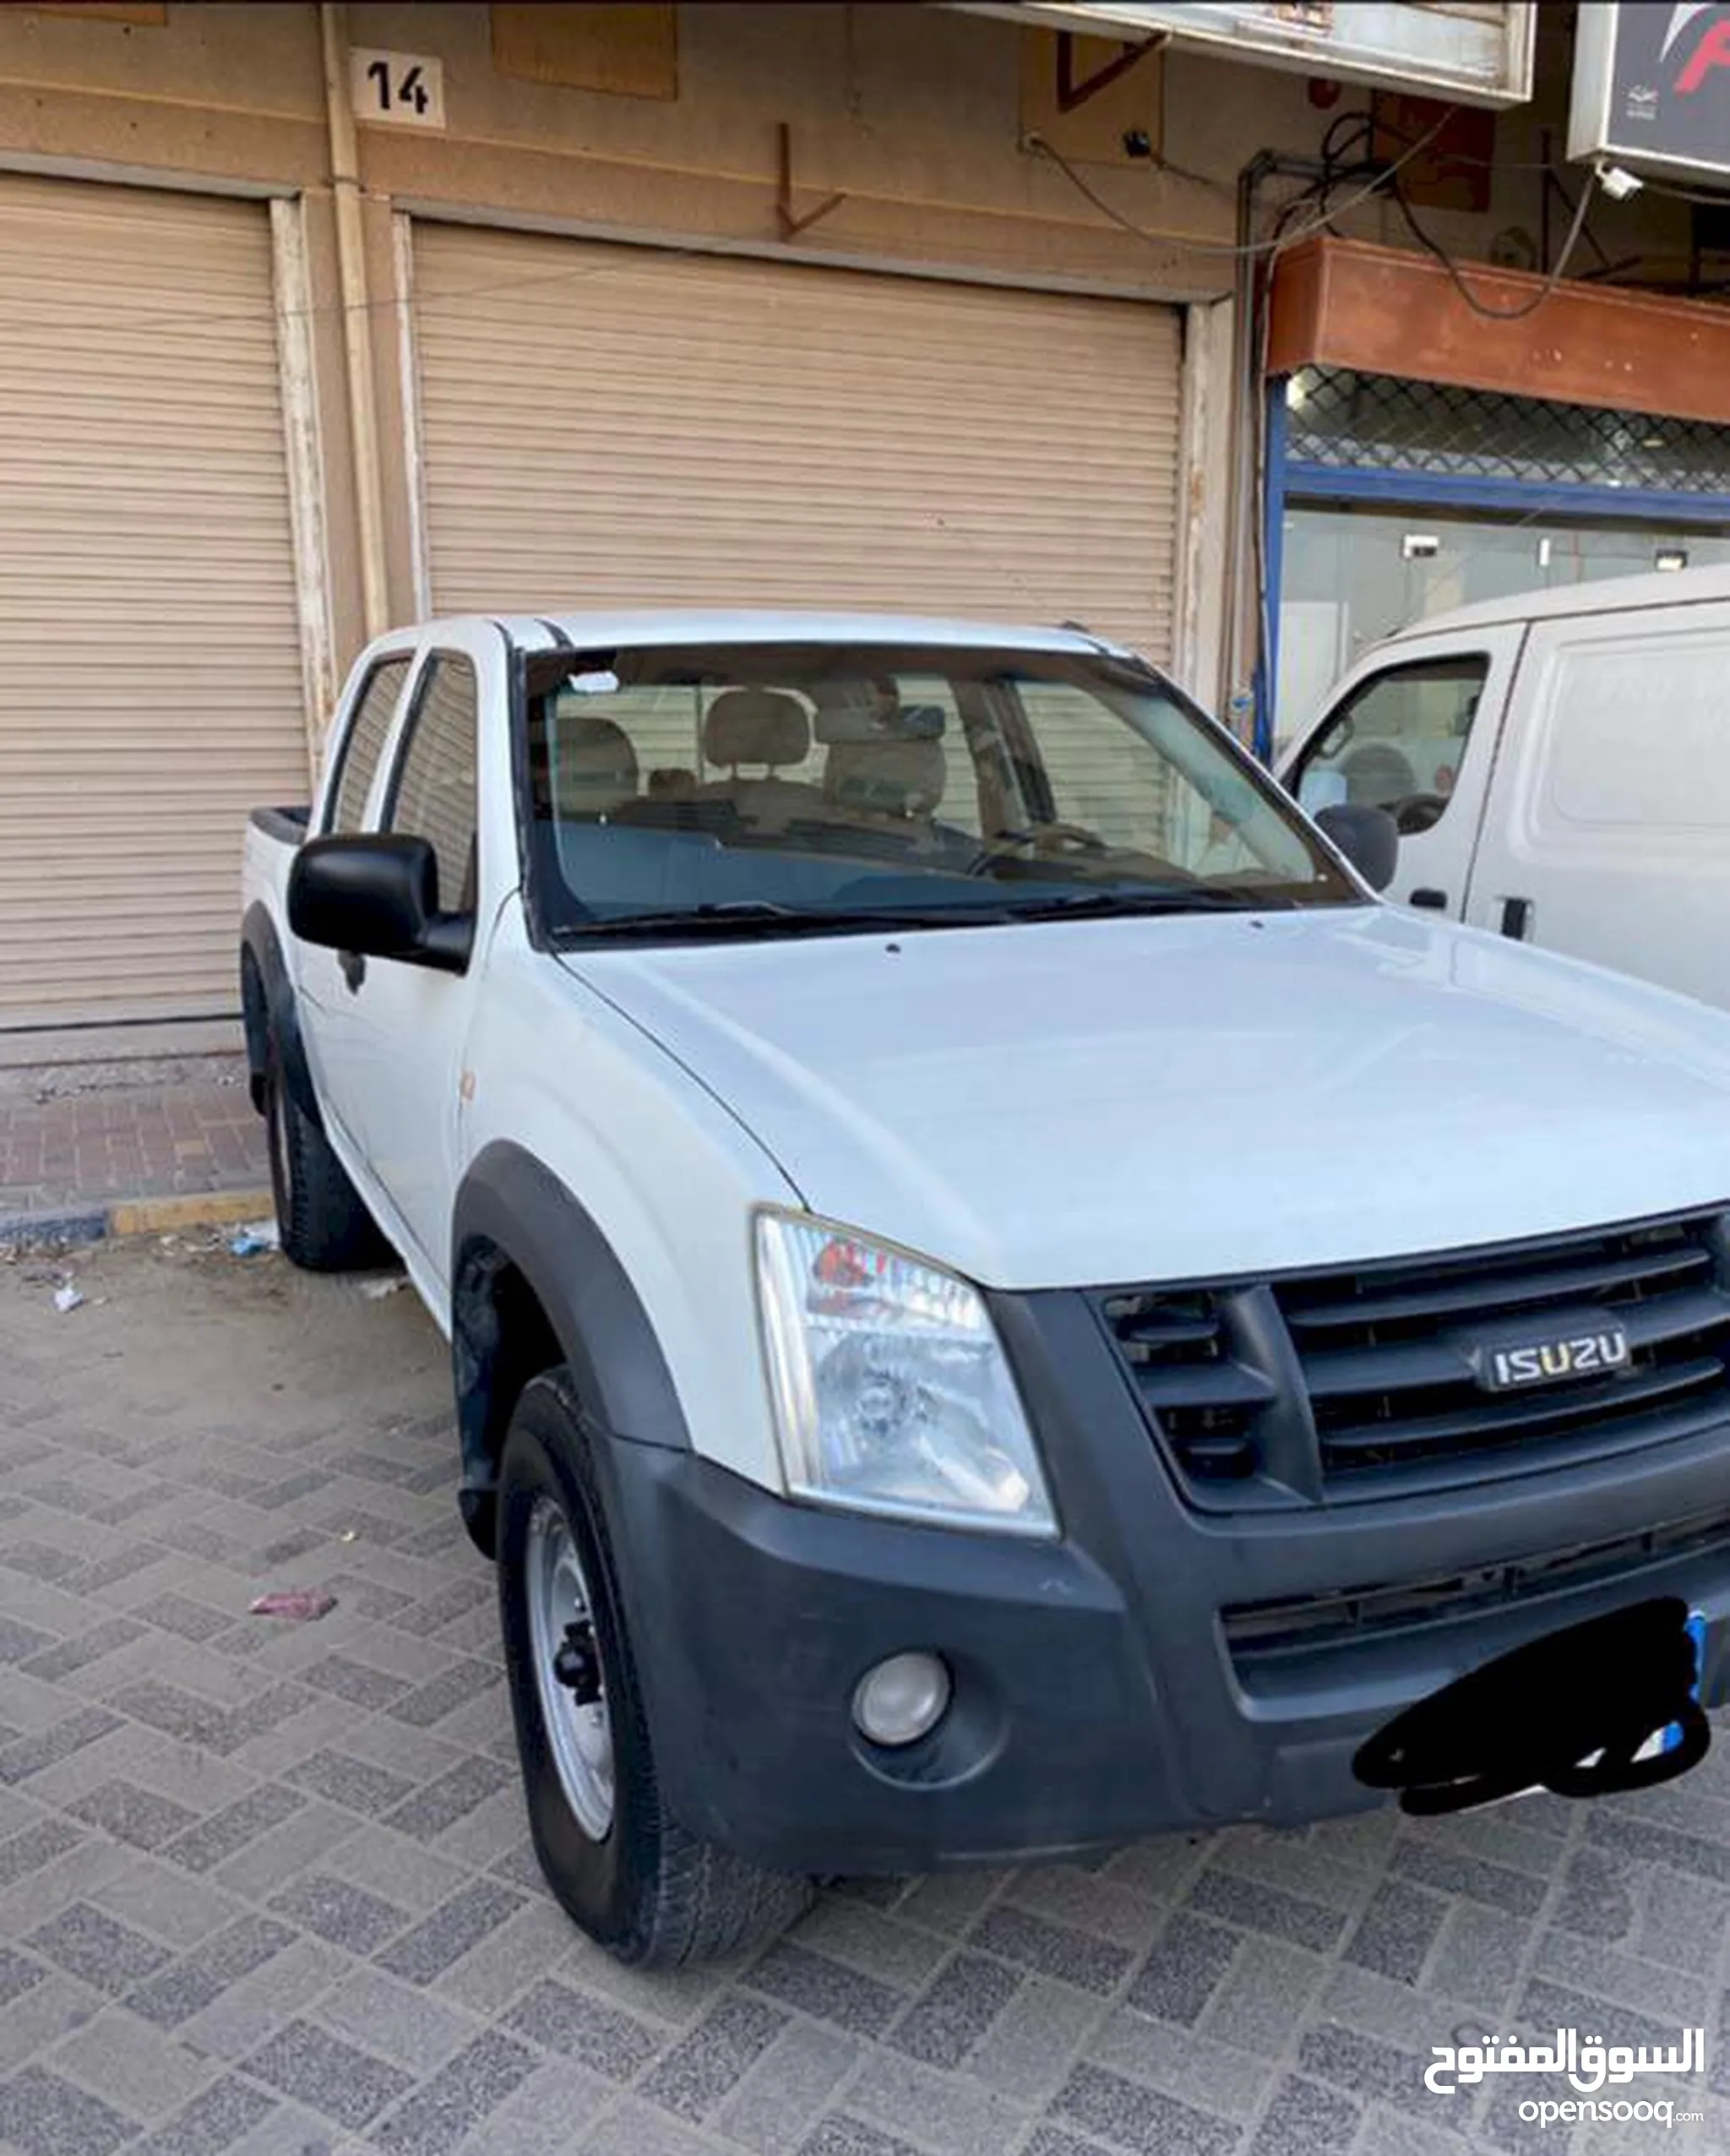 سيارات ايسوزو للبيع : ارخص الاسعار في البحرين : جميع موديلات سيارة ايسوزو :  مستعملة وجديدة | السوق المفتوح